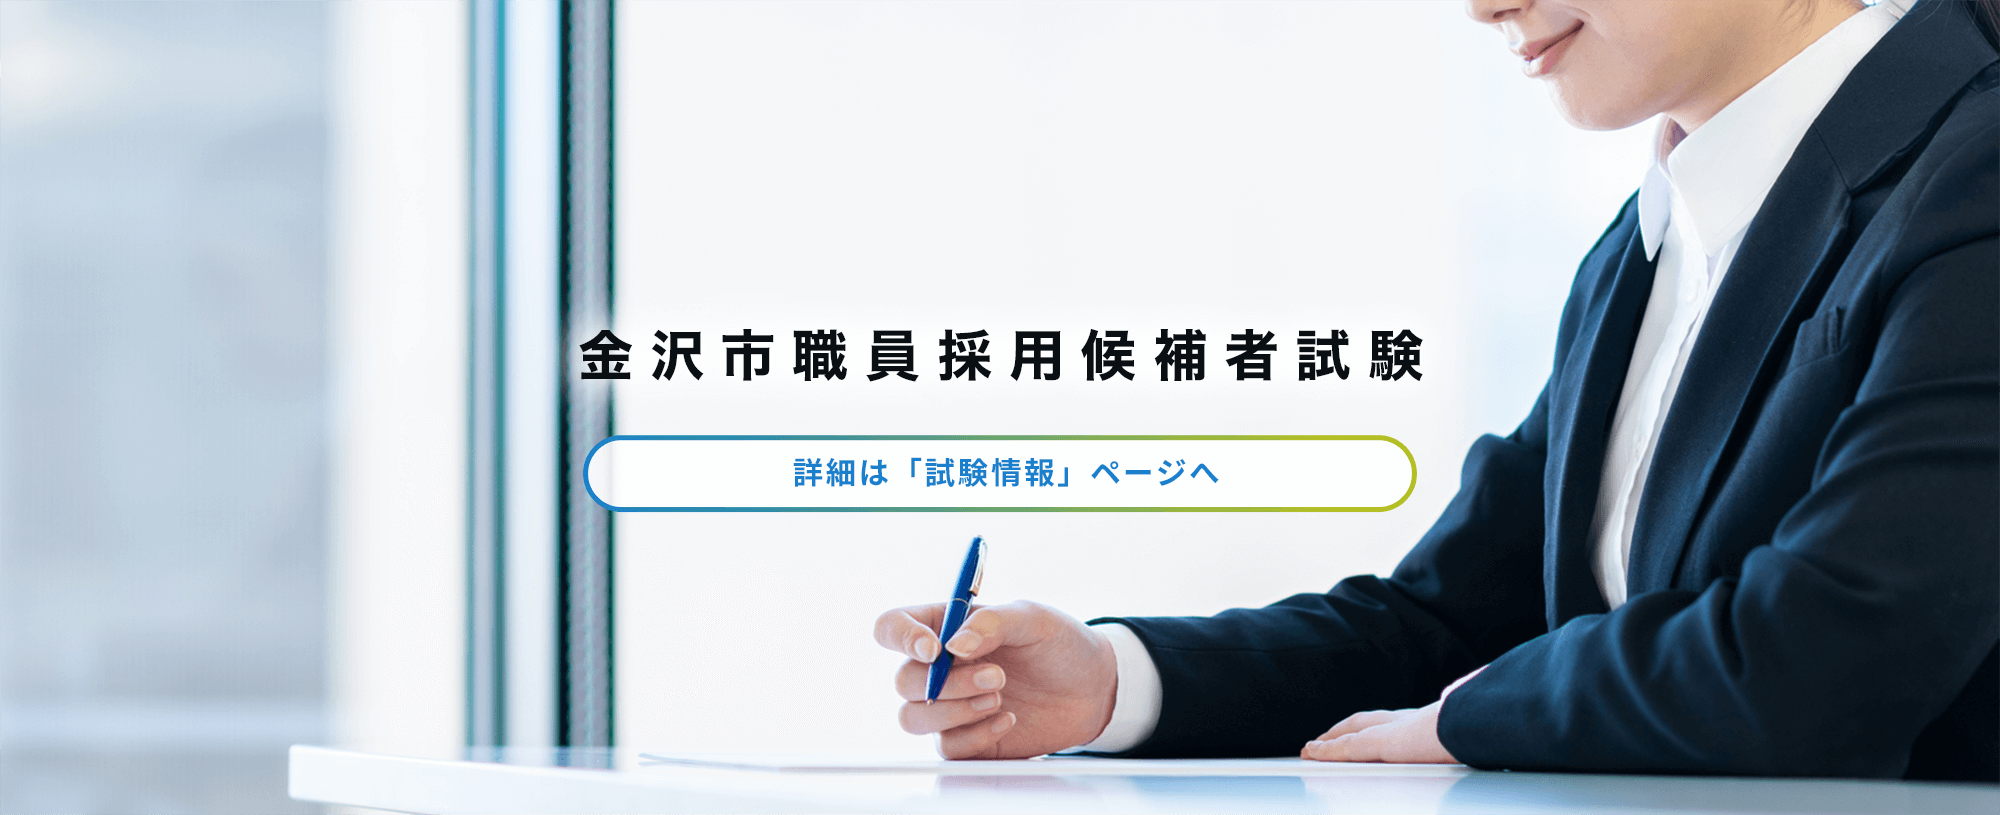 金沢市職員採用候補者試験の画像